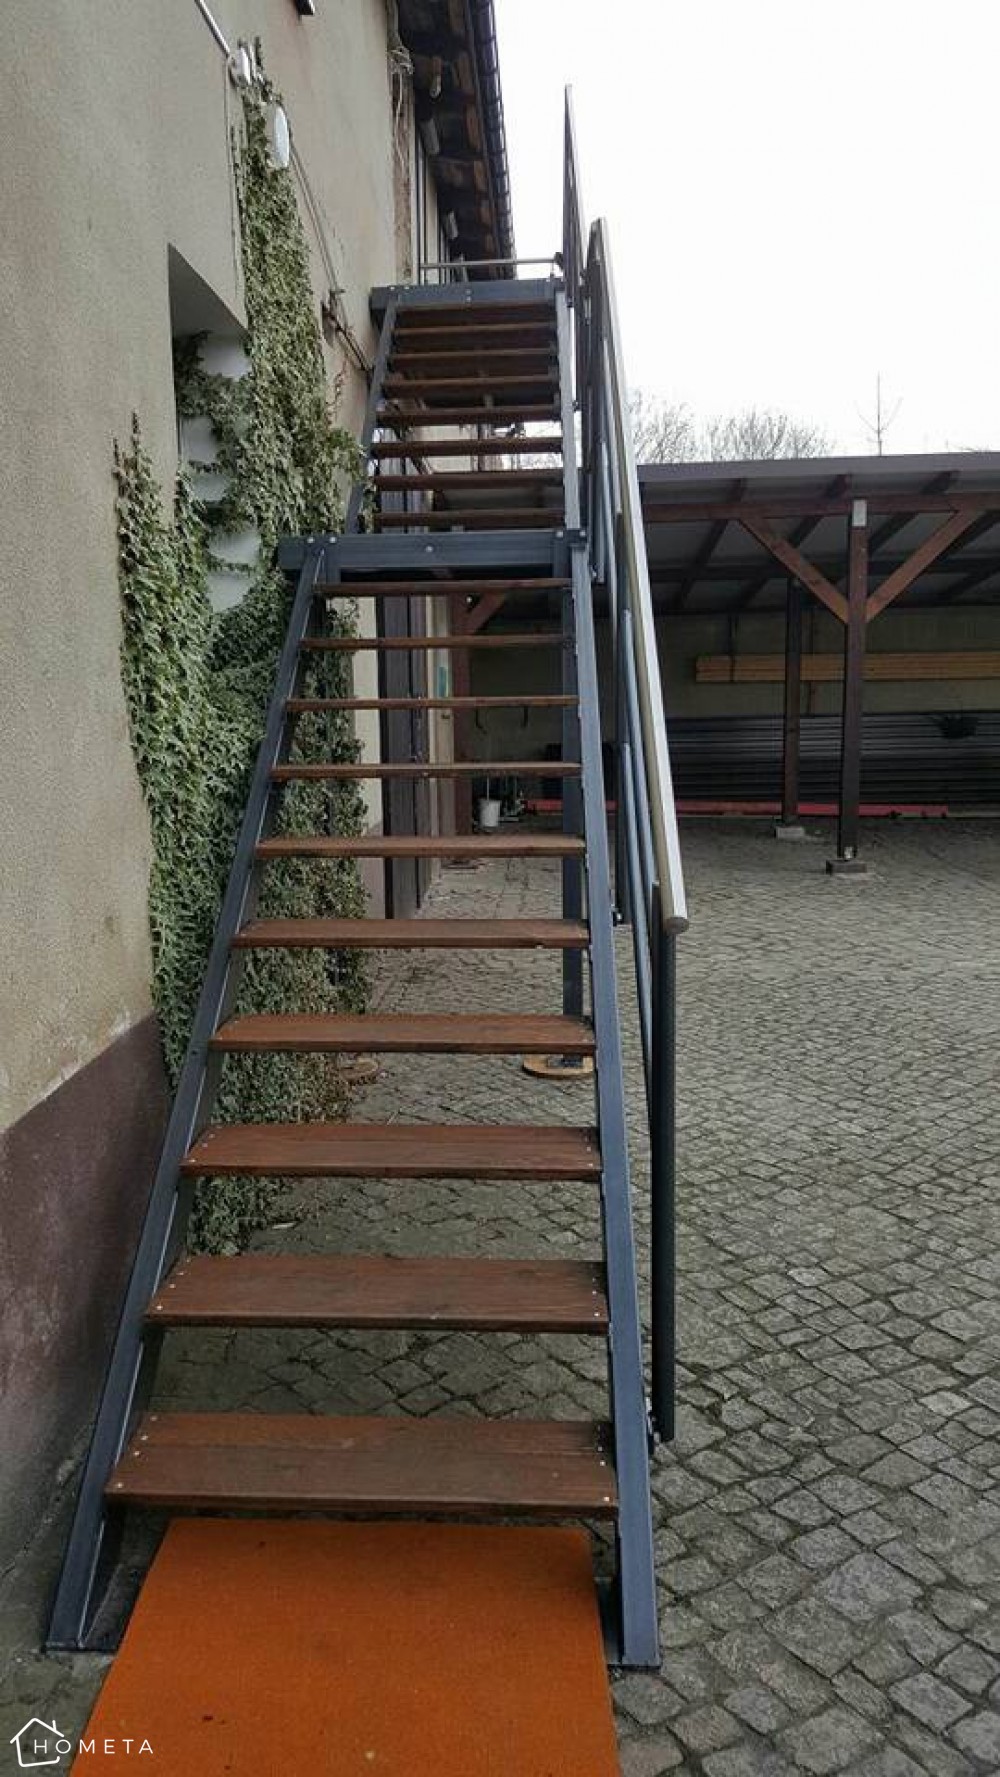 Metalowe schody zewnętrzne z drewnianymi stopniami